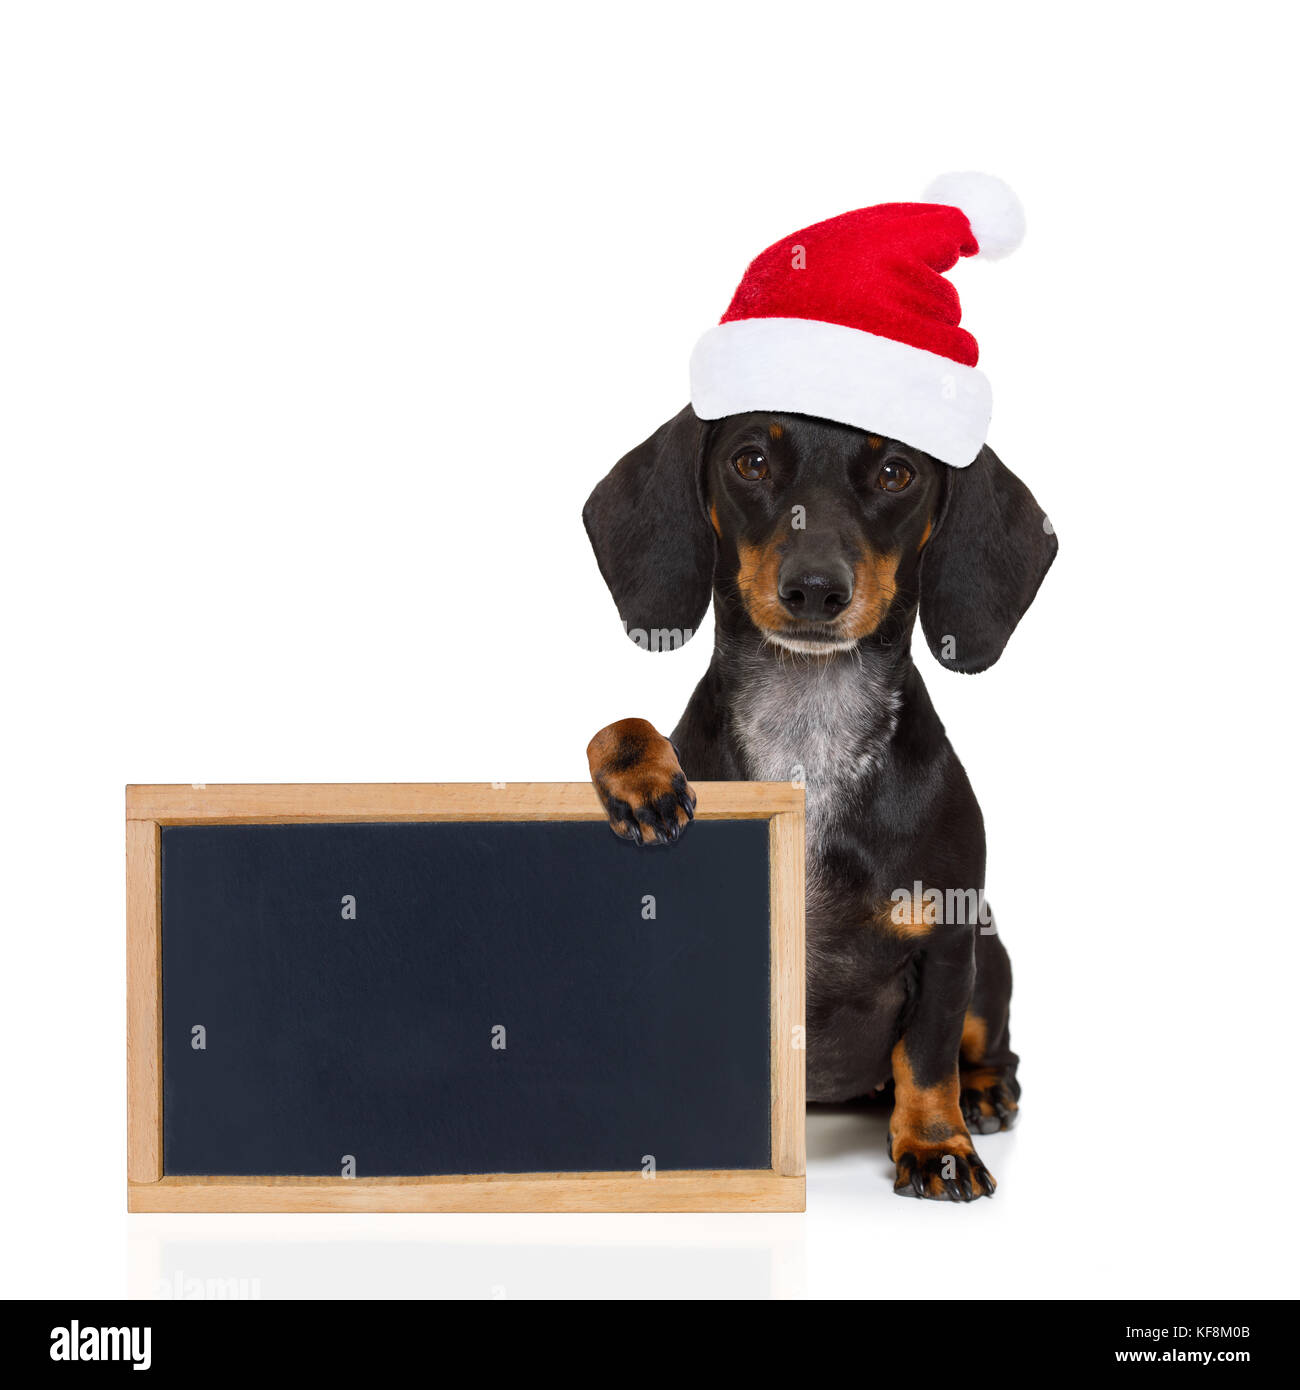 Lustige dackel Wurst santa claus Hund auf Weihnachten das Tragen der roten  Urlaub hat, auf weißem Hintergrund, halten ein Banner oder Tafel p  Stockfotografie - Alamy